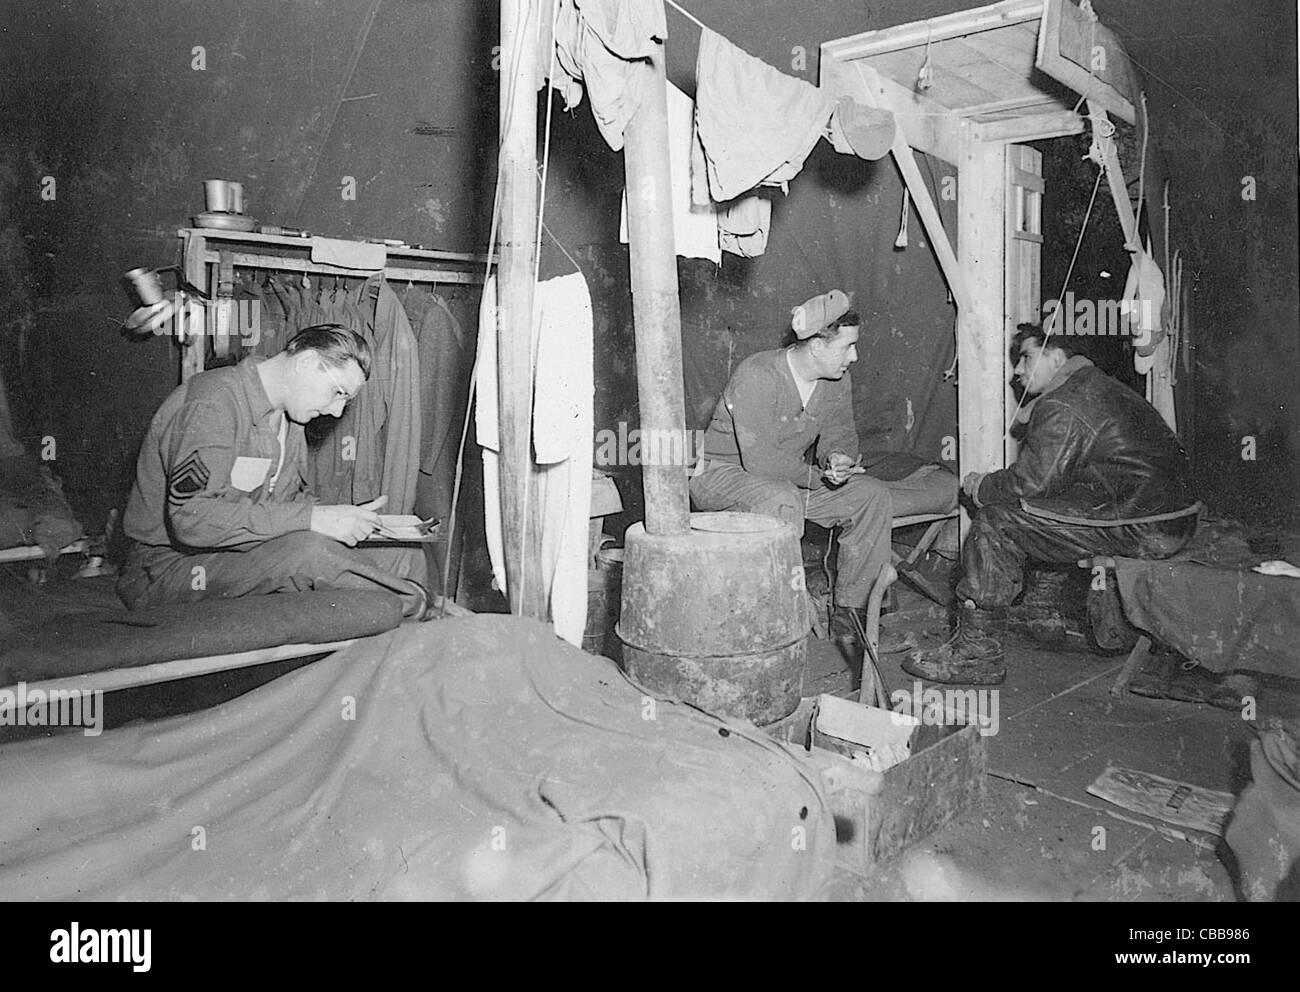 WW11 American USAAF aviadores relajarse en sus tented alojamiento en algún lugar de Francia durante la guerra. Foto de stock